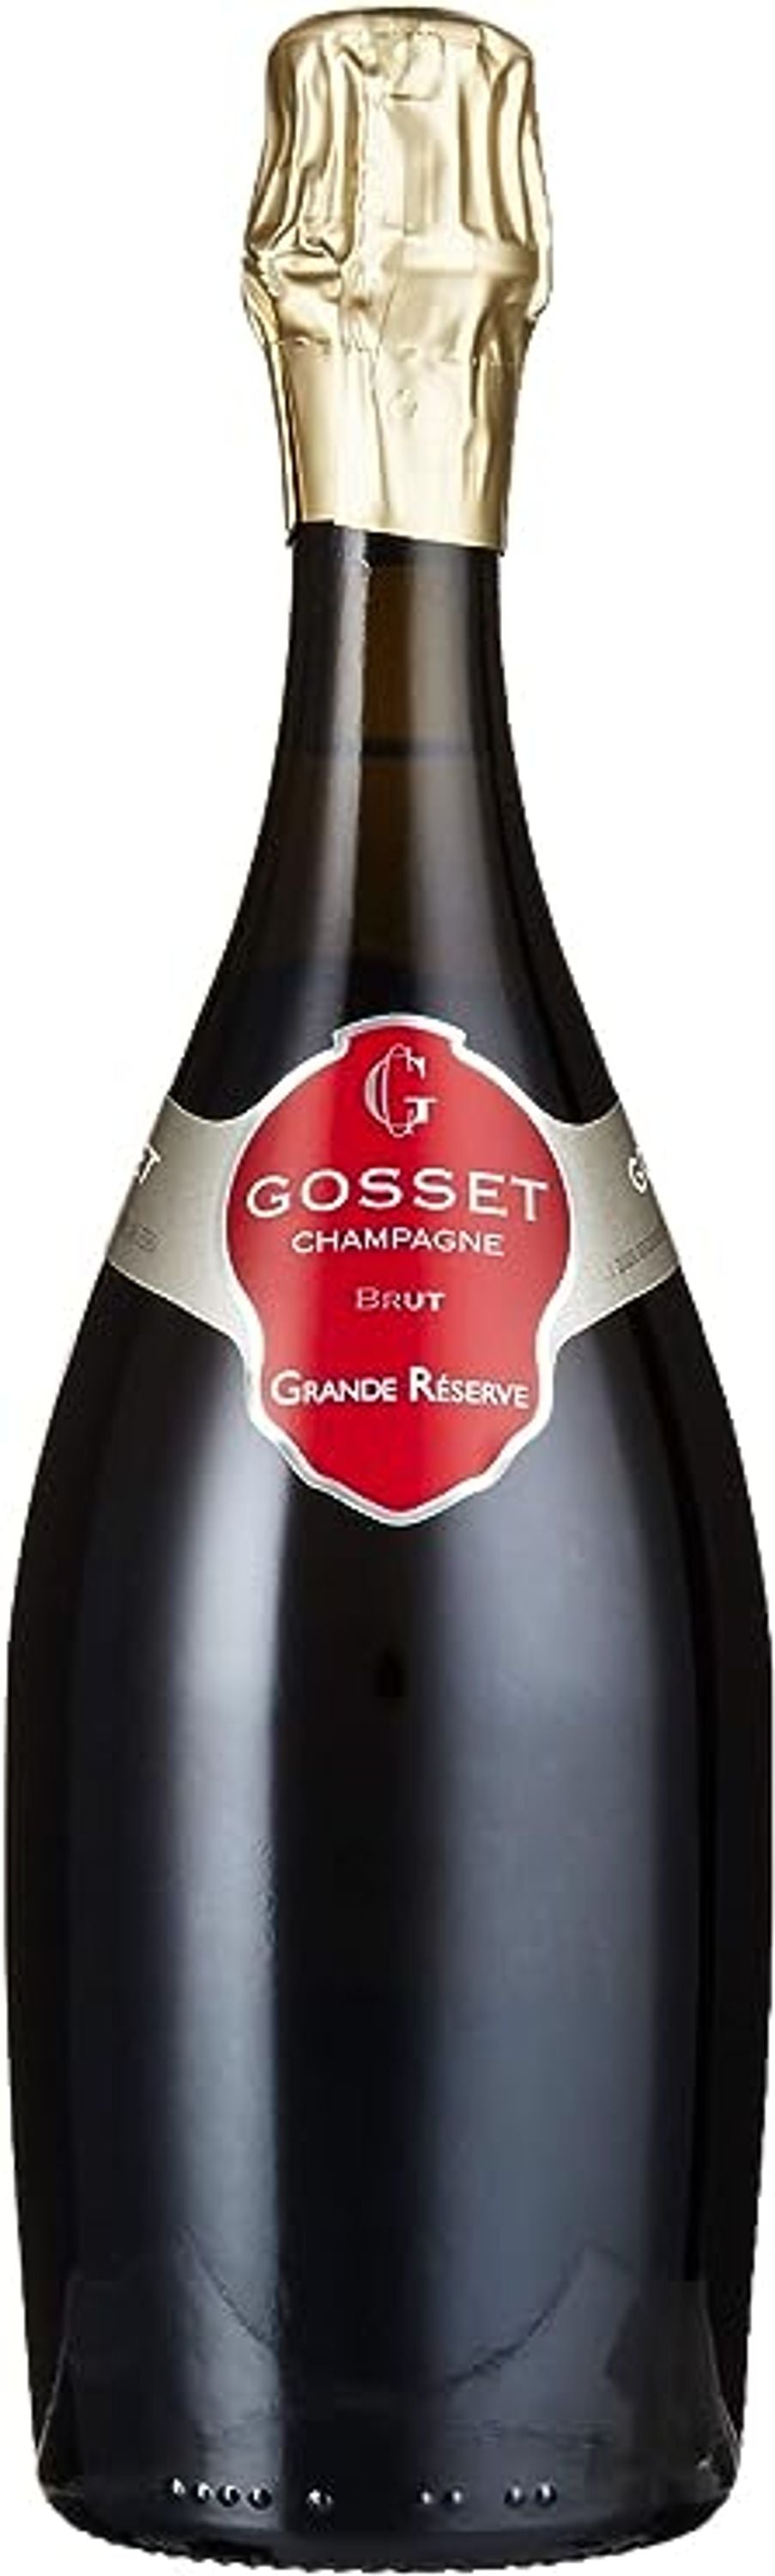 Gosset Grande Reserve Brut Champagner 0,75l, alc. 12 Vol.-%